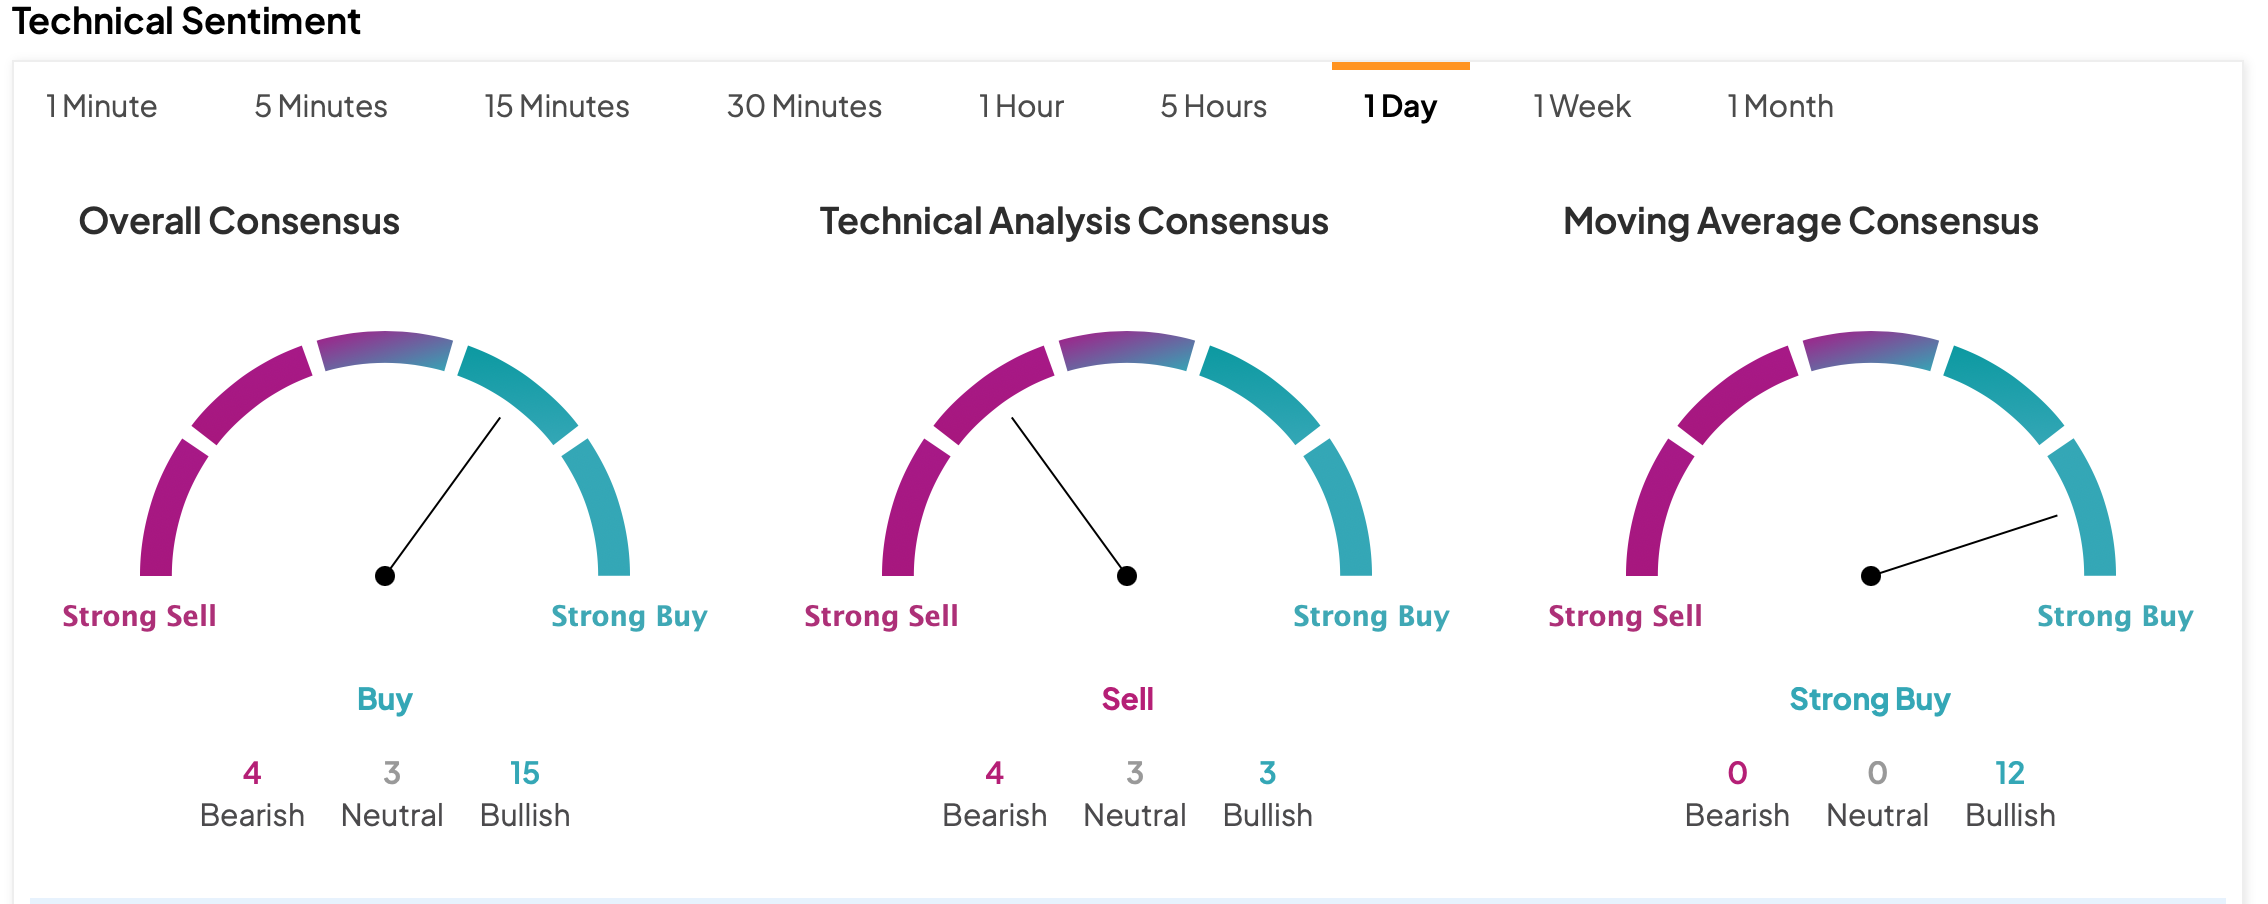 Tesla Stock Forecast Based on Technical Analysis